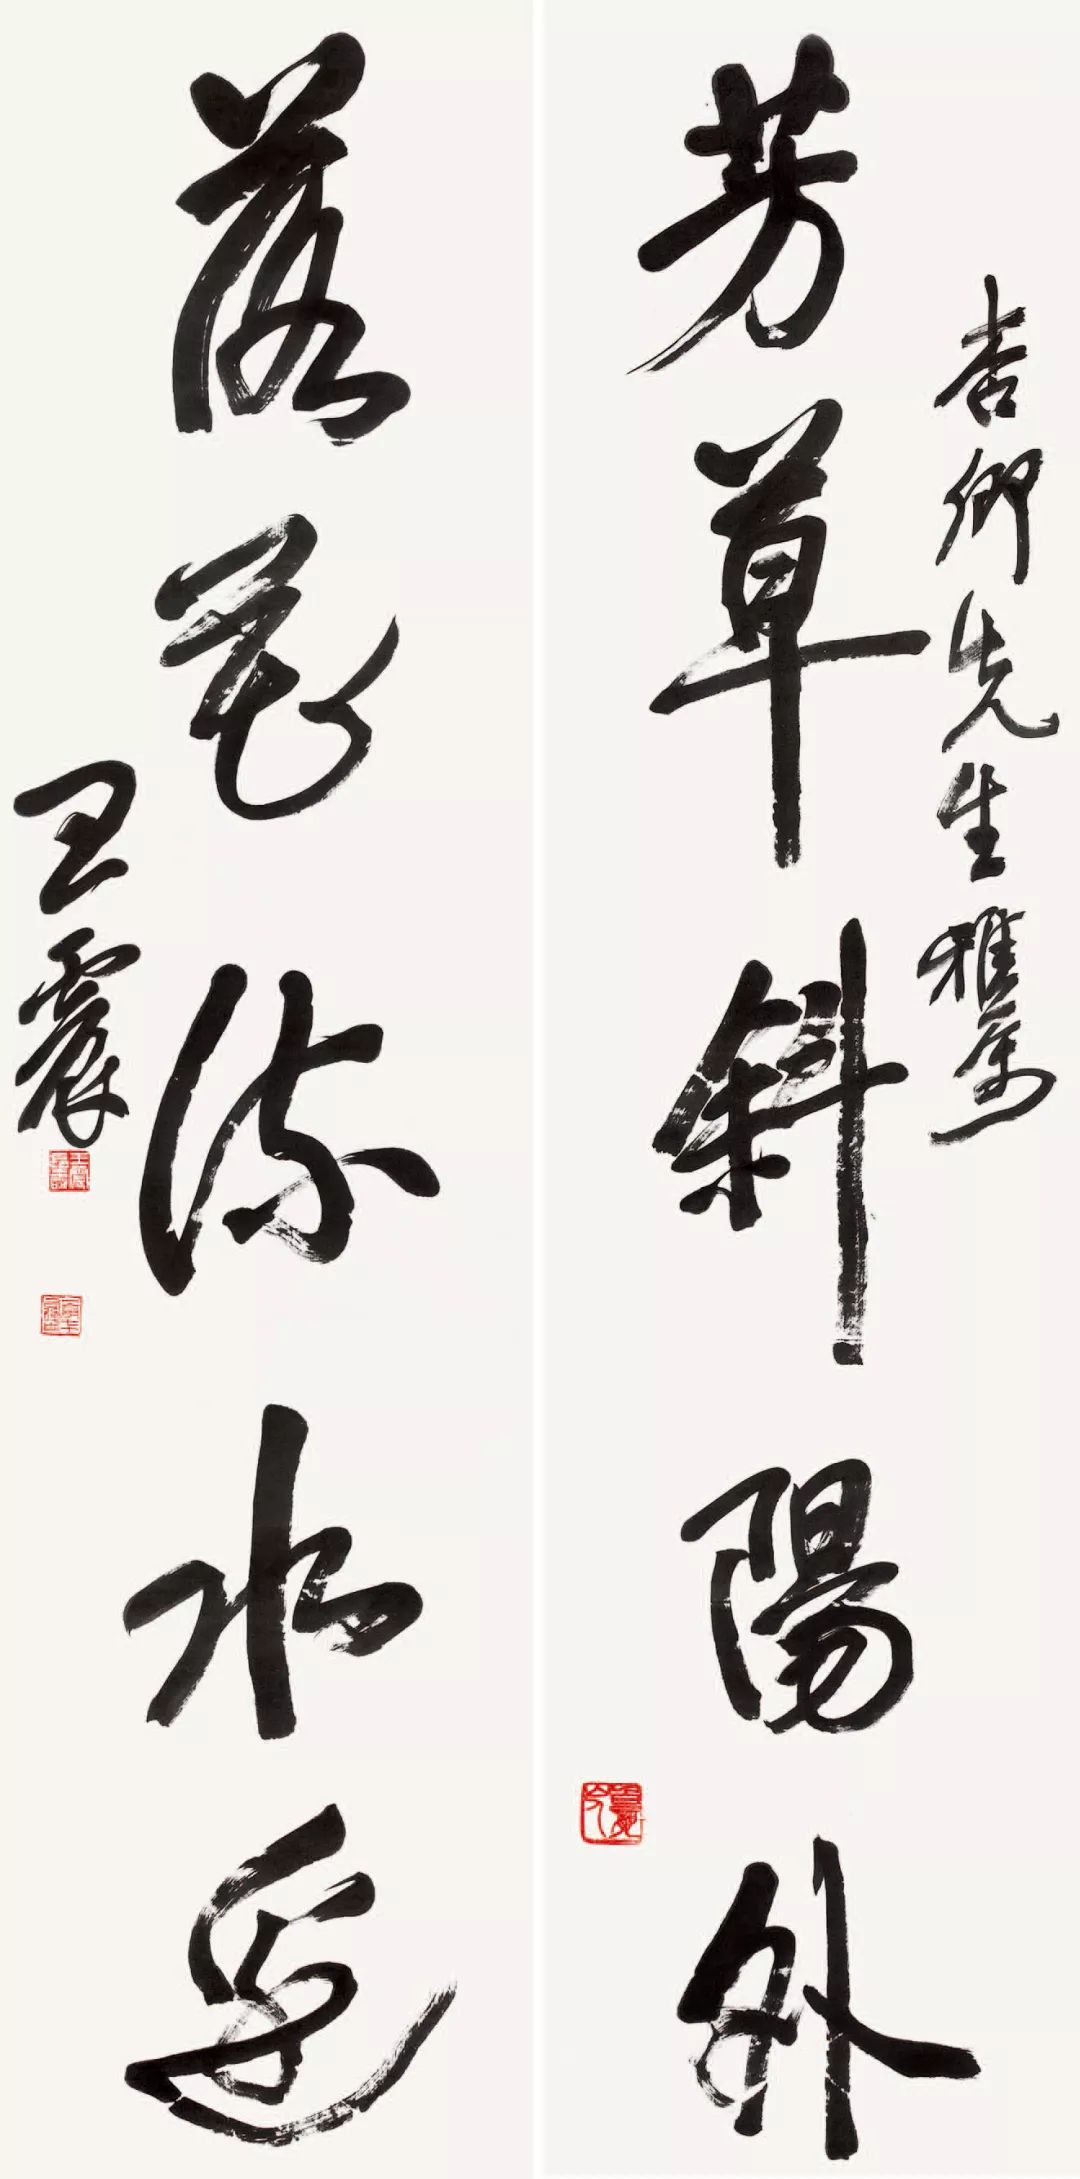 天惊地怪生以亭——王一亭的书法创作与艺术赞助- 中国书画收藏家协会